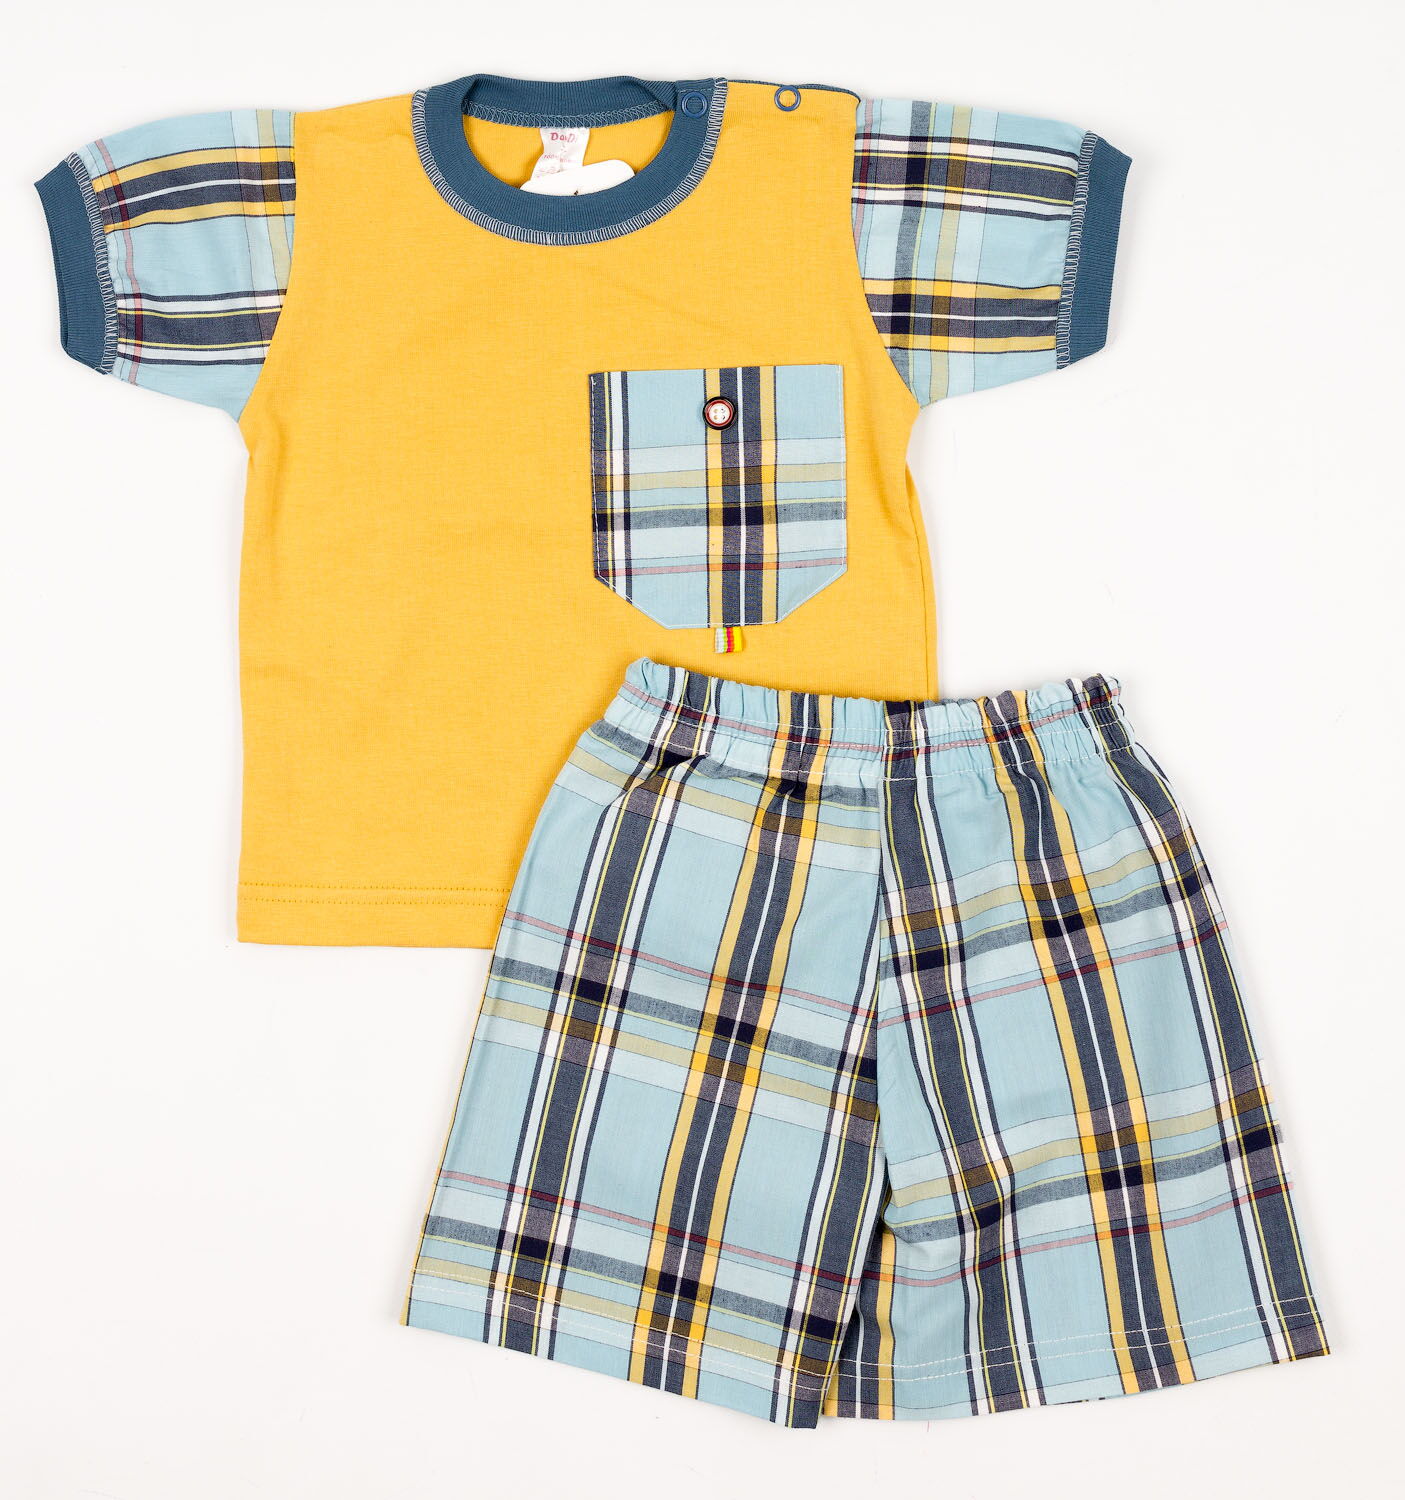 Комплект для мальчика (футболка+шорты) Денди горчичный 916 - цена